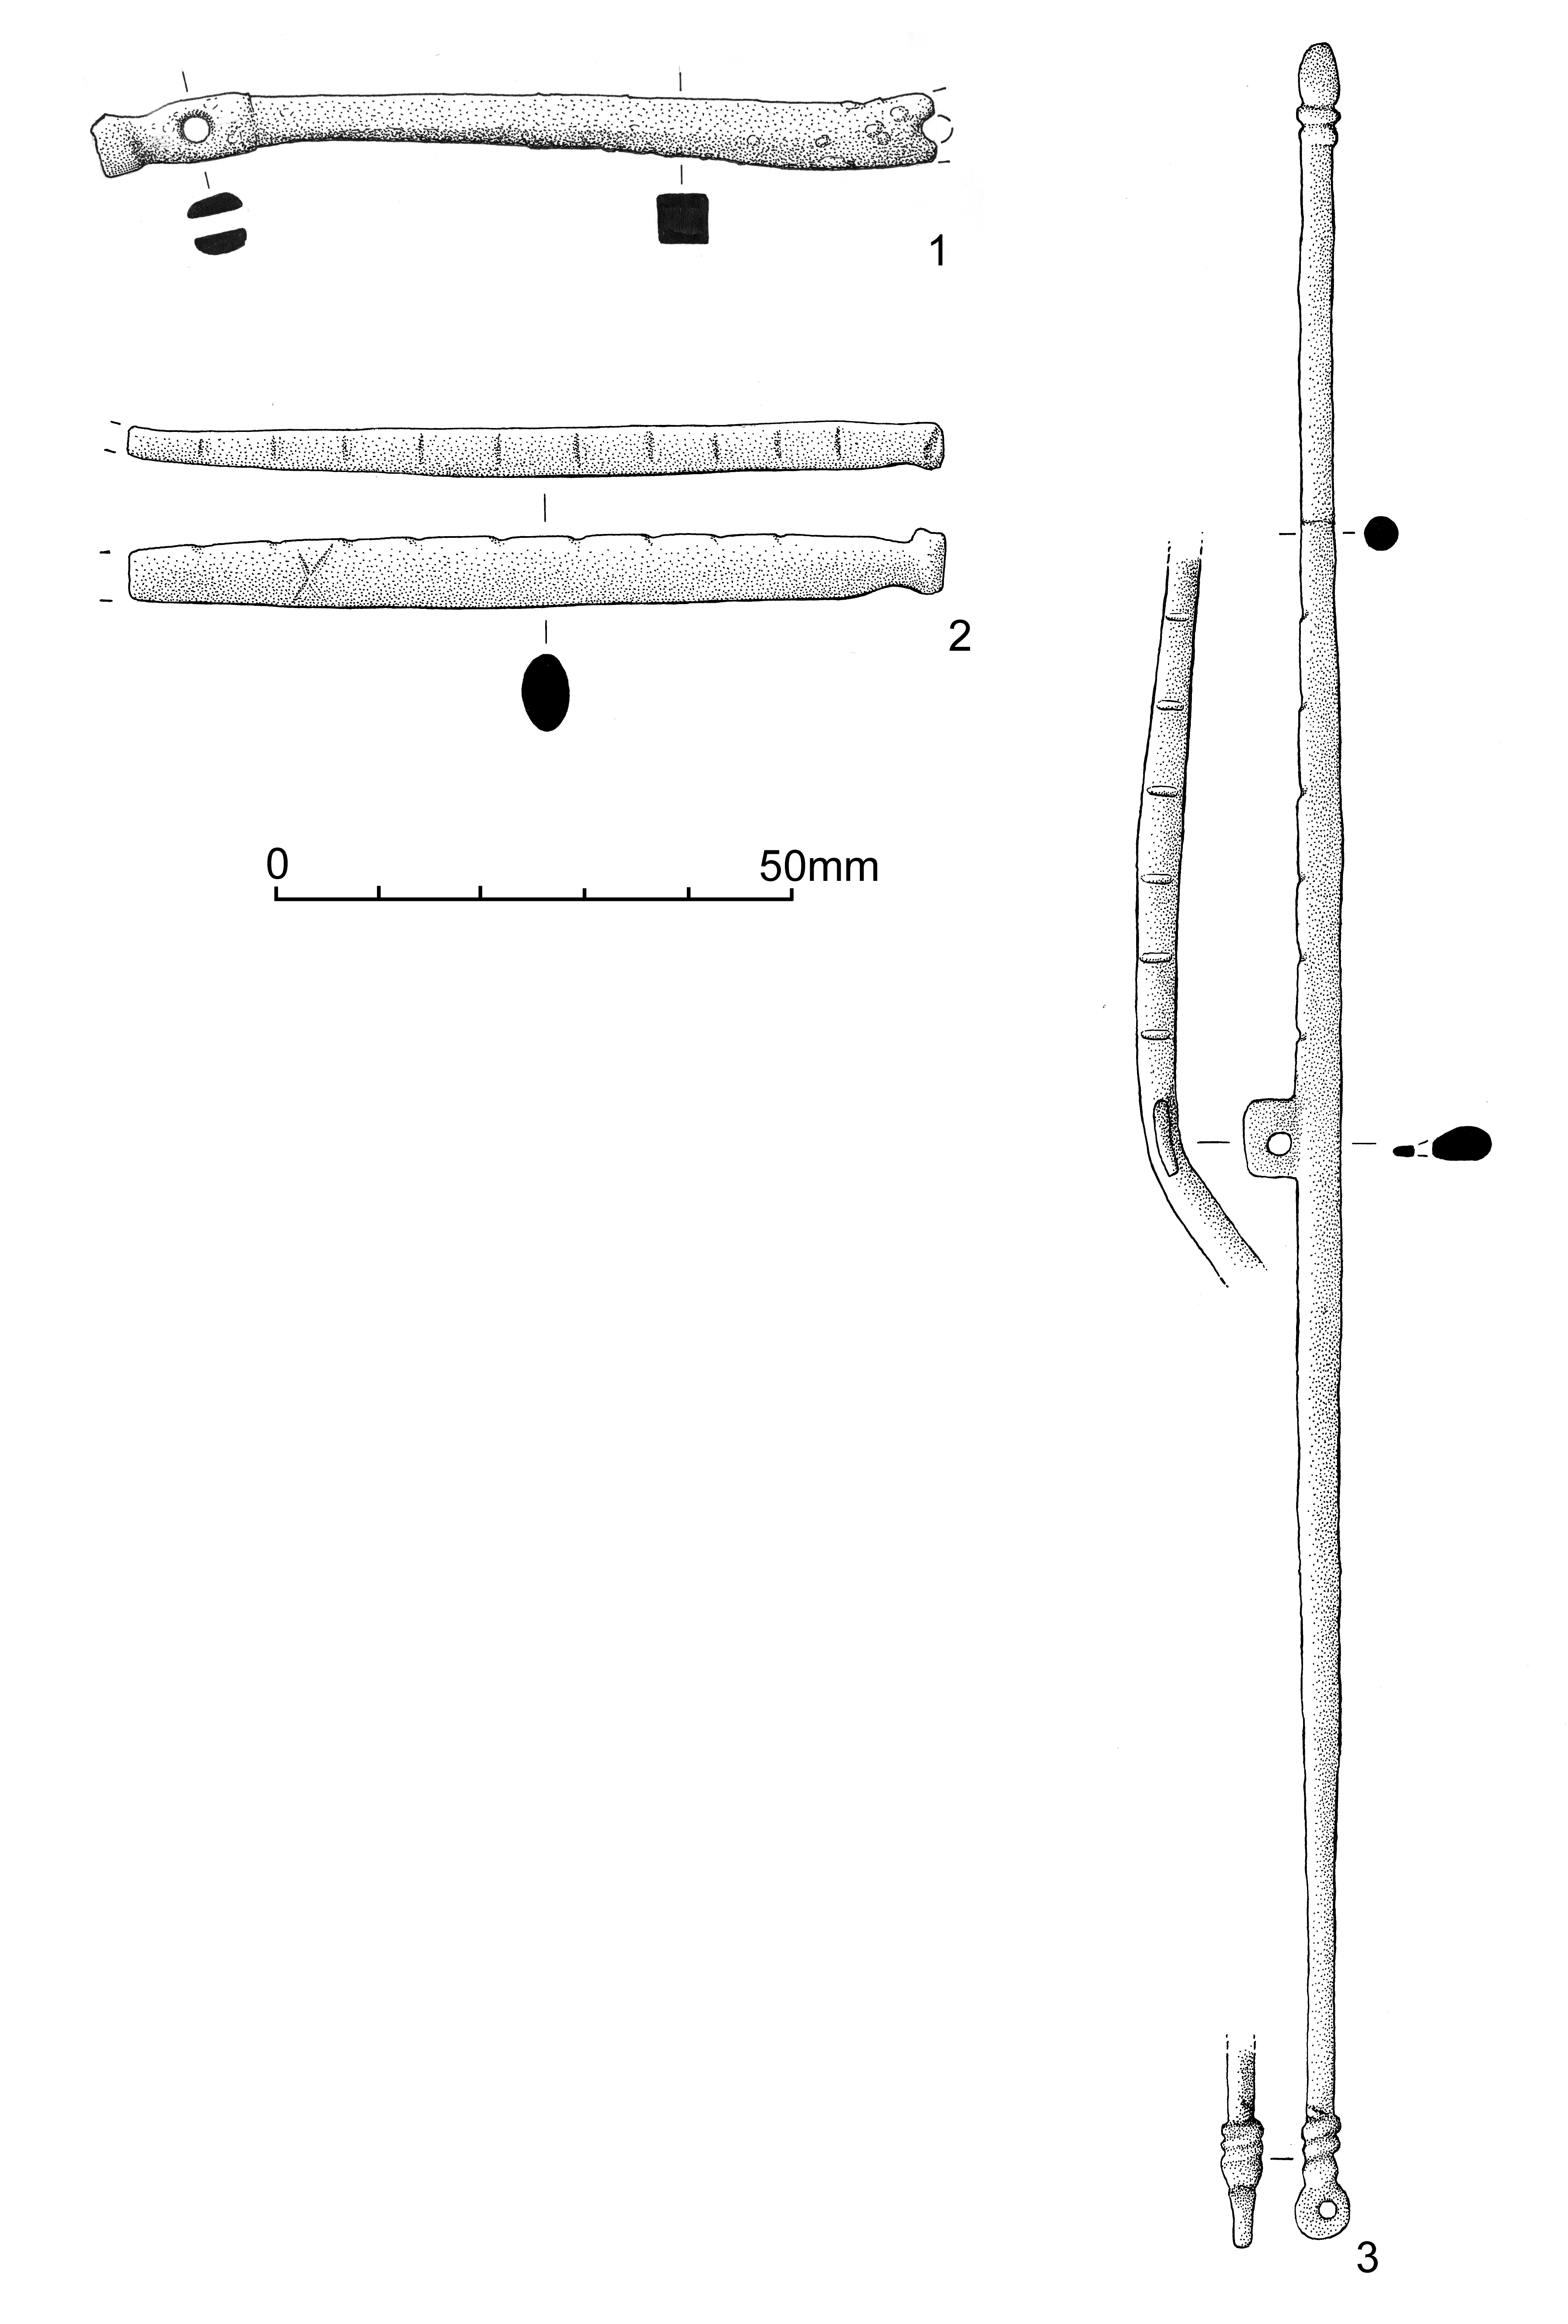 Lead sinker, 130g per piece, 11mm center hole